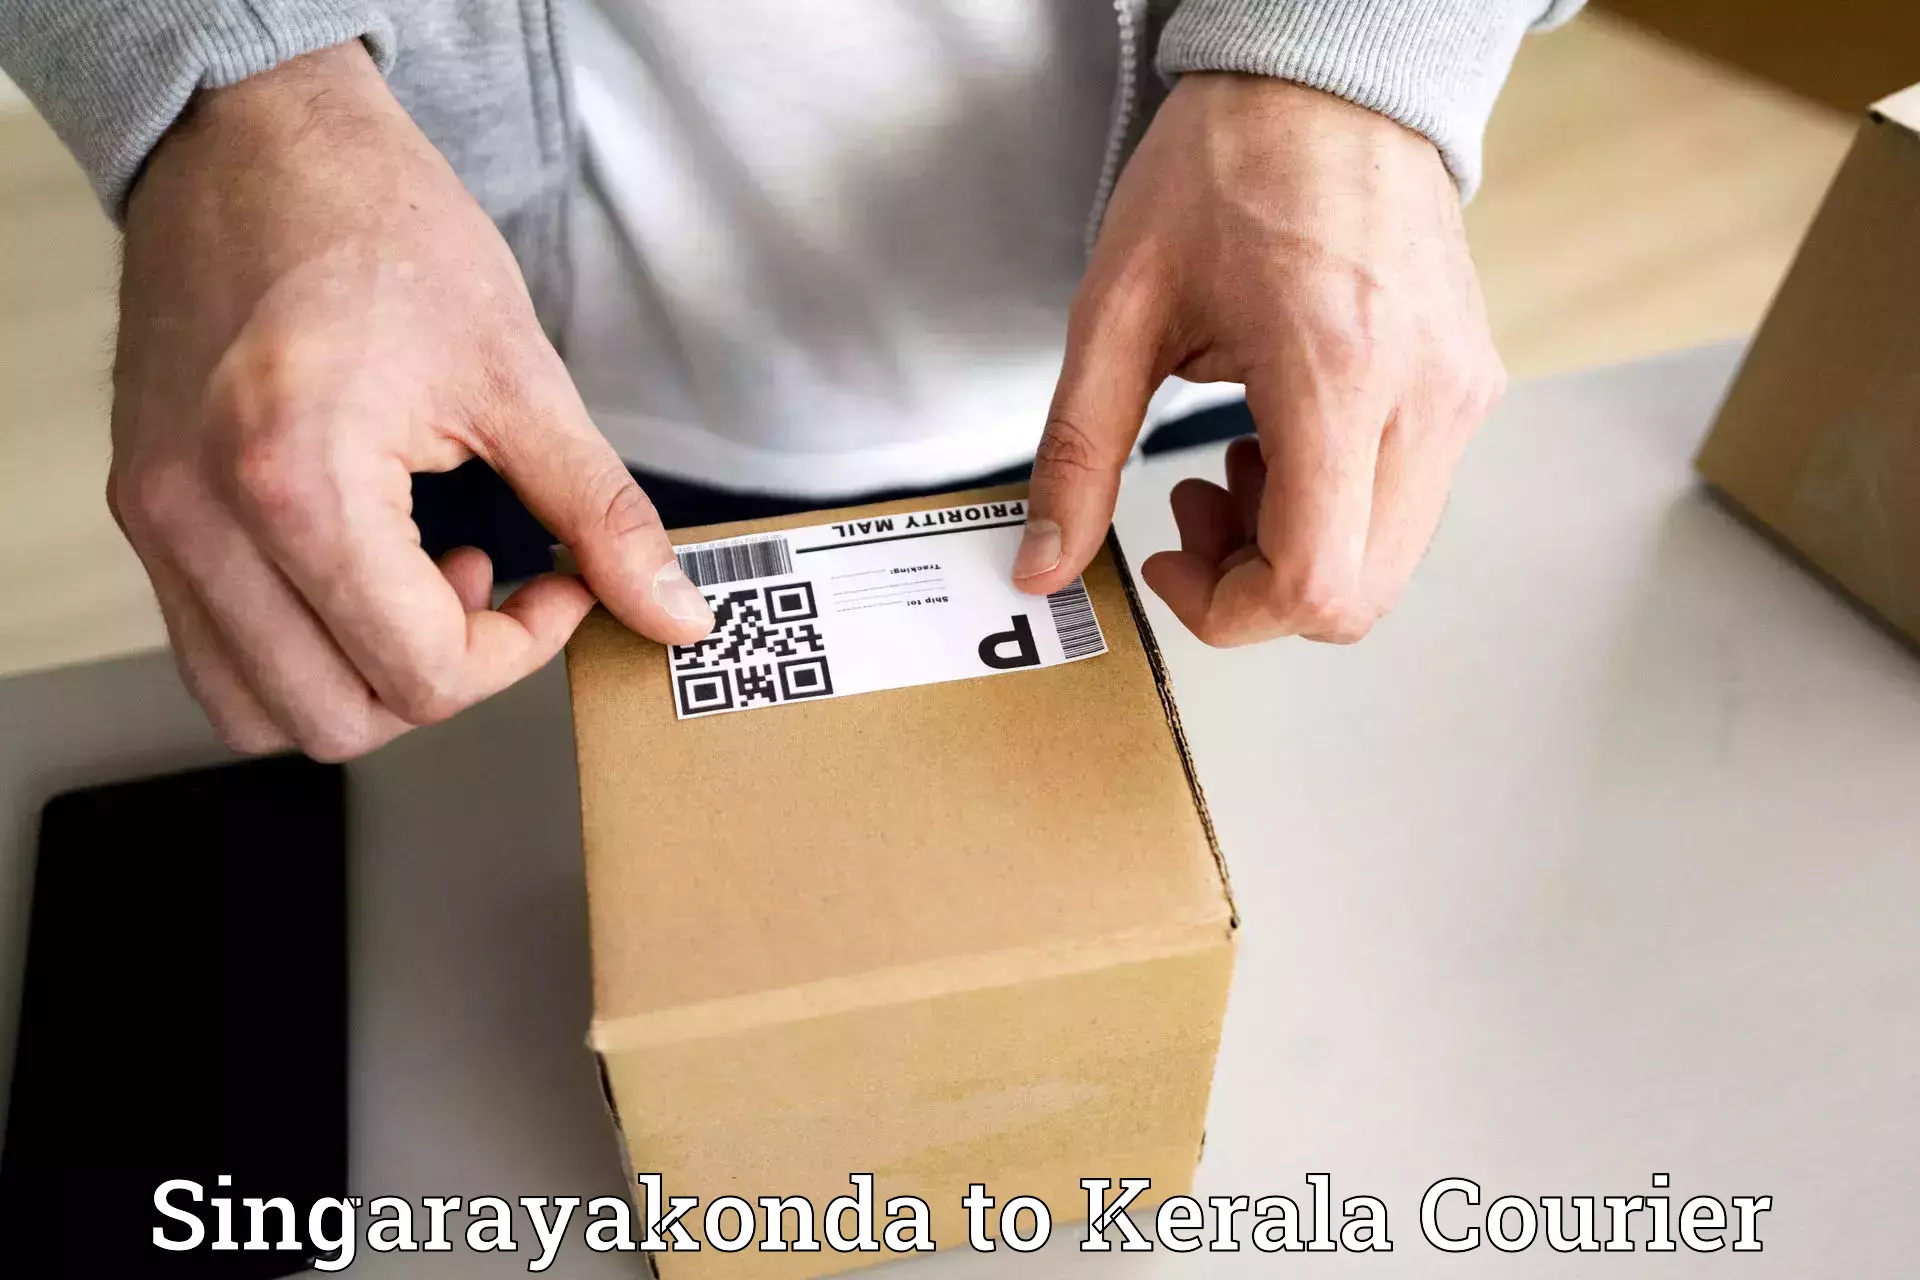 Same-day delivery options Singarayakonda to Kakkayam